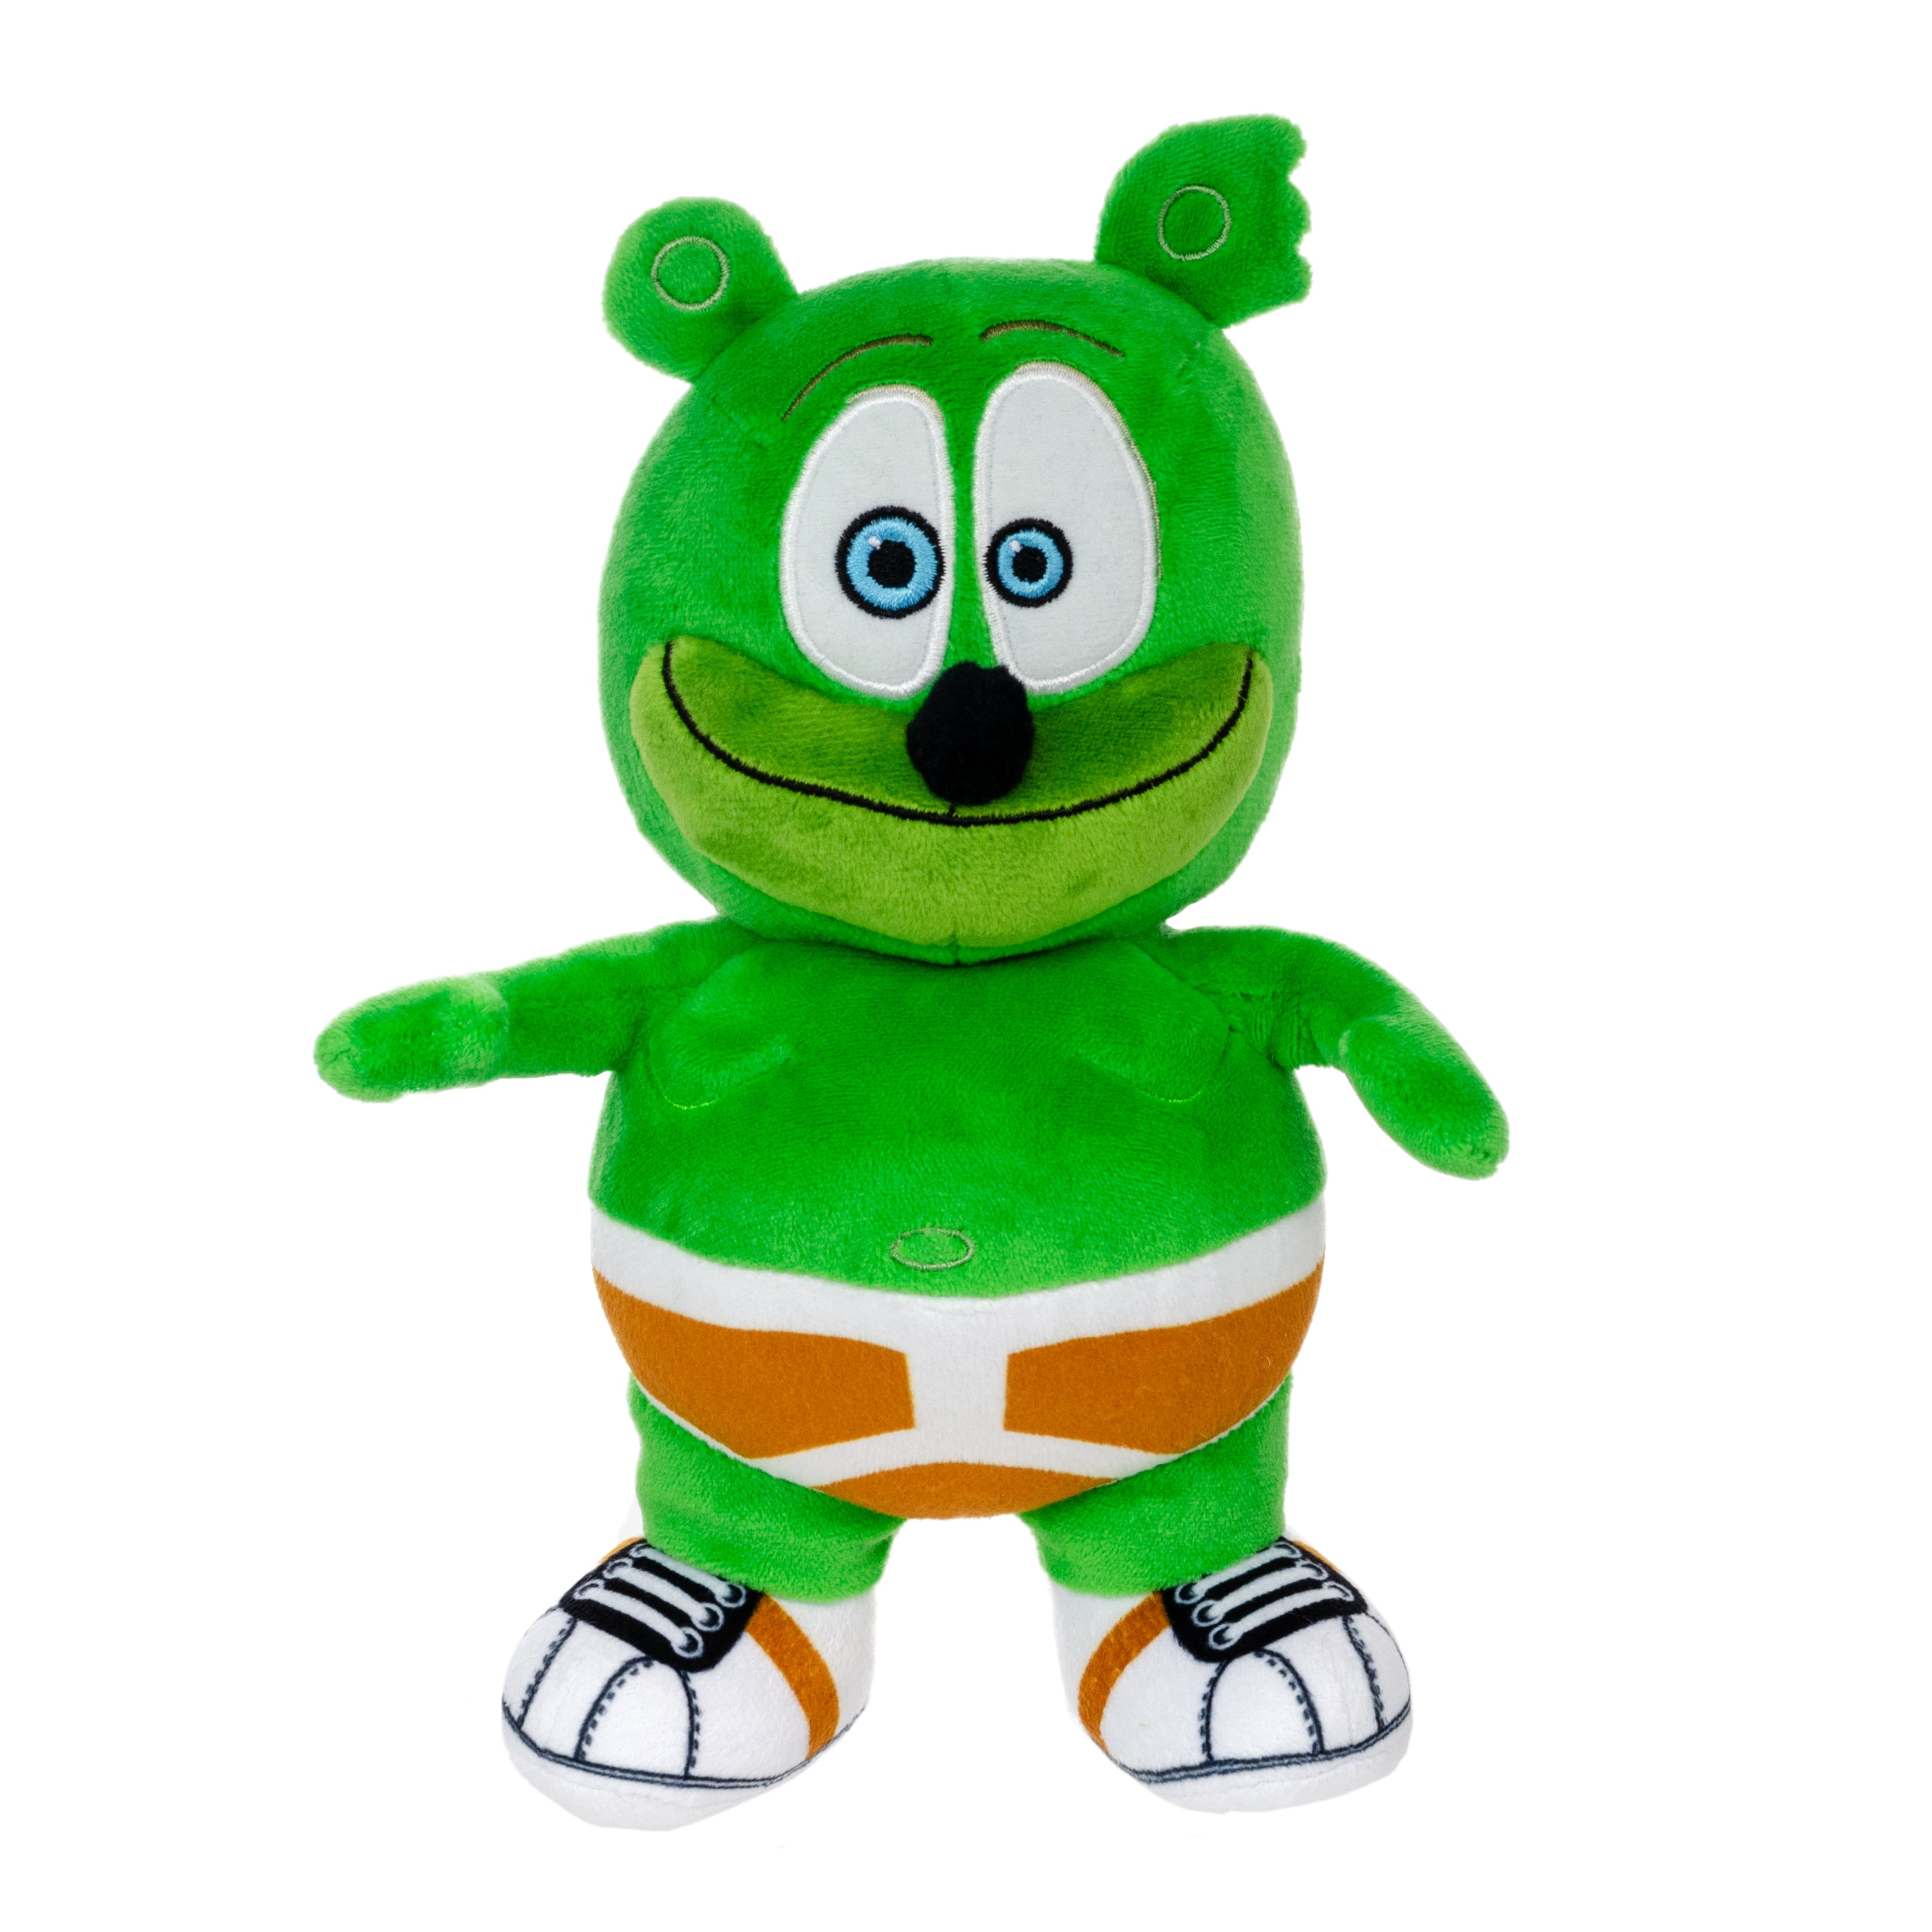 Gummibär (The Gummy Bear) Squishy Plush Toy – GummyBearShop